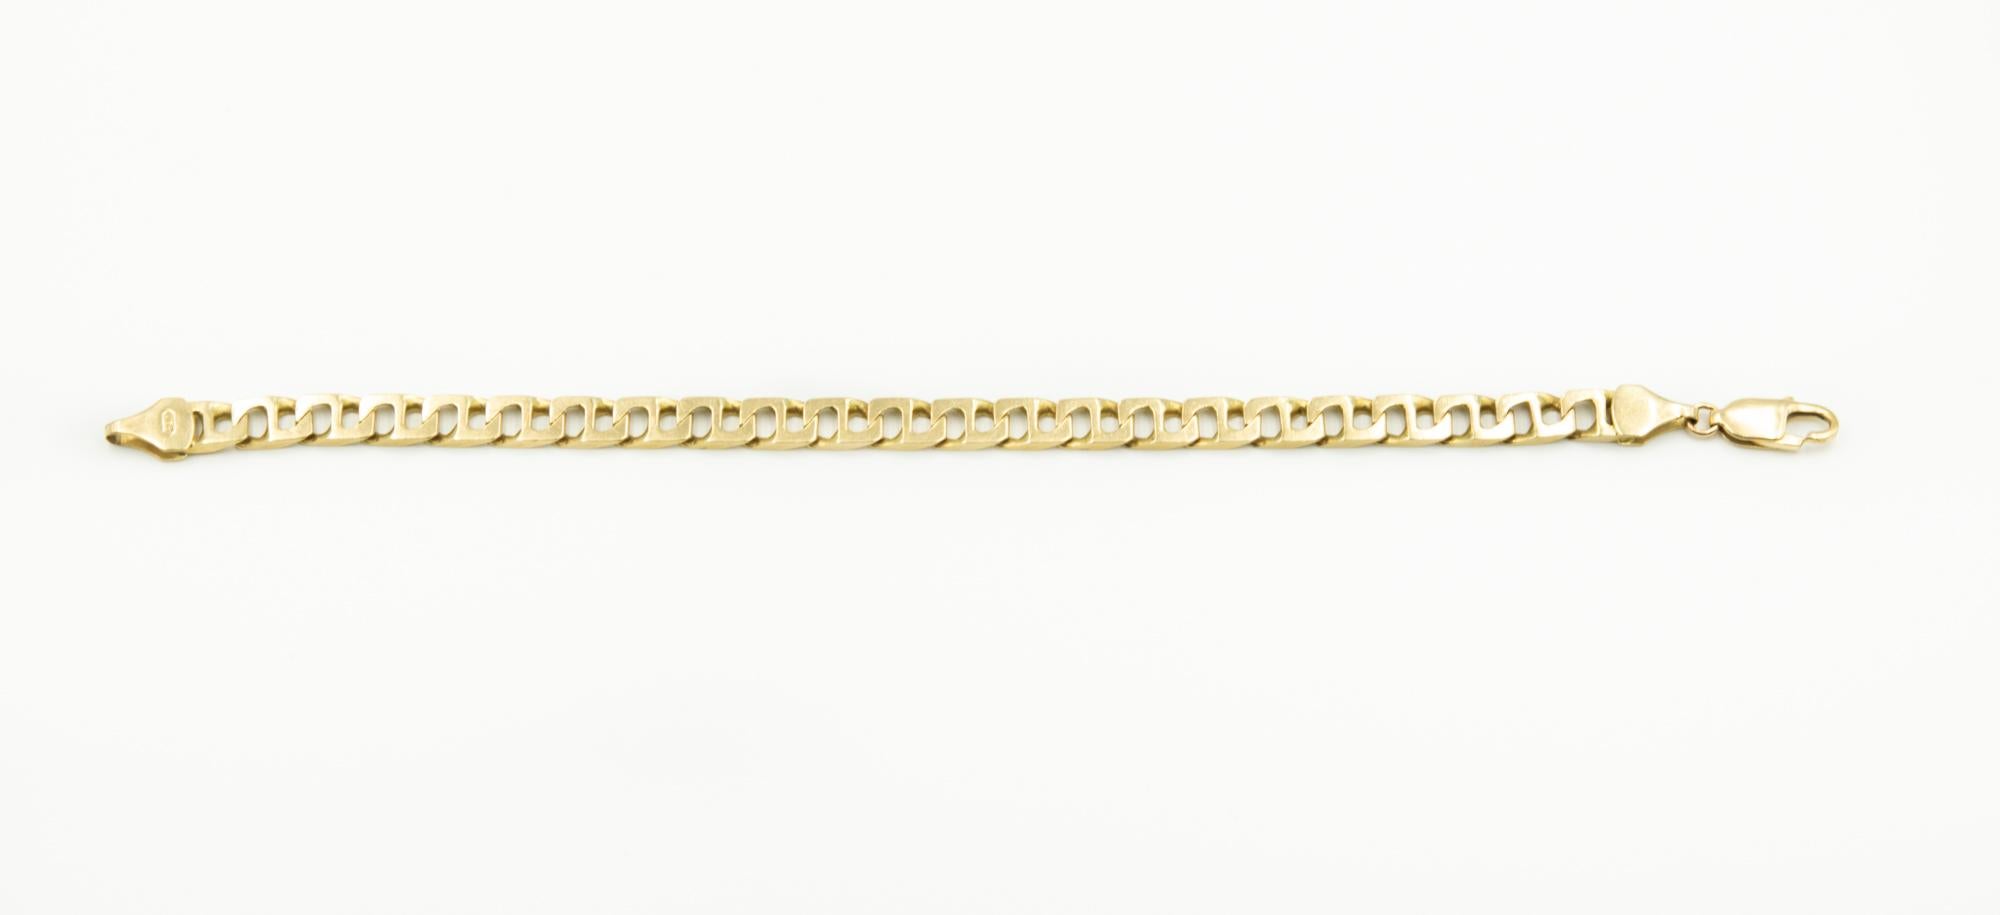 Elegant  14k Gelbgold rechteckige mariner Link (sieht auch wie ein 8) Herrenarmband mit einem Karabinerverschluss.  Das Armband ist 8,5